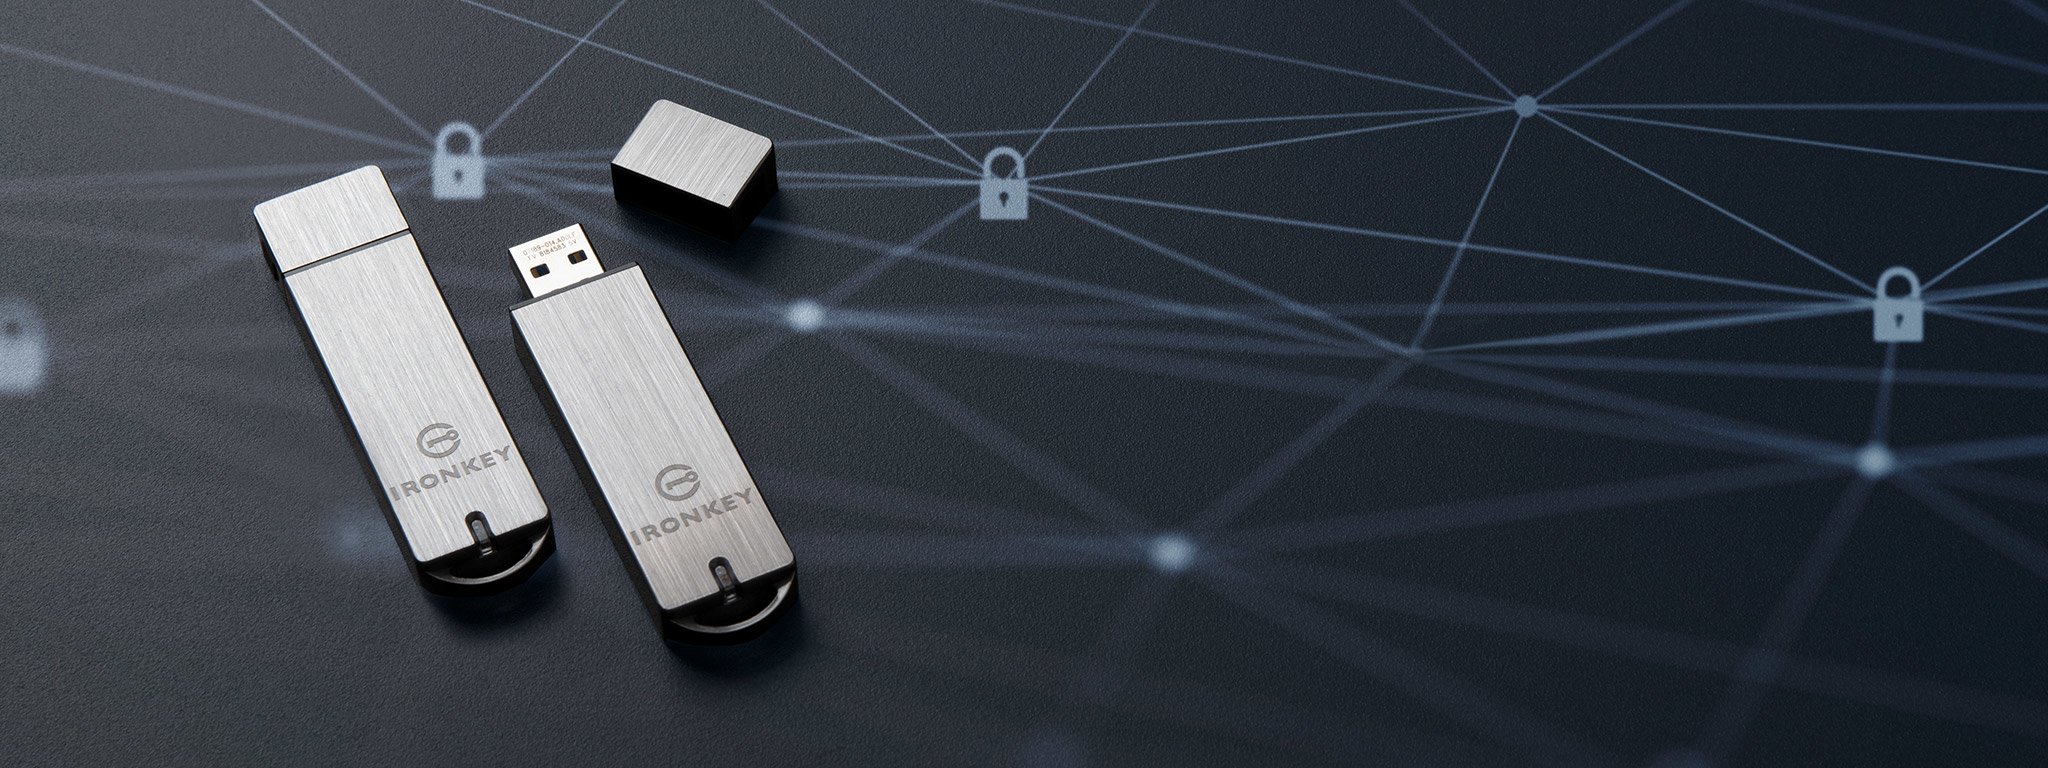 Deux clés USB IronKey S1000 chiffrées posées sur une surface noire avec des icônes de verrouillage en blanc